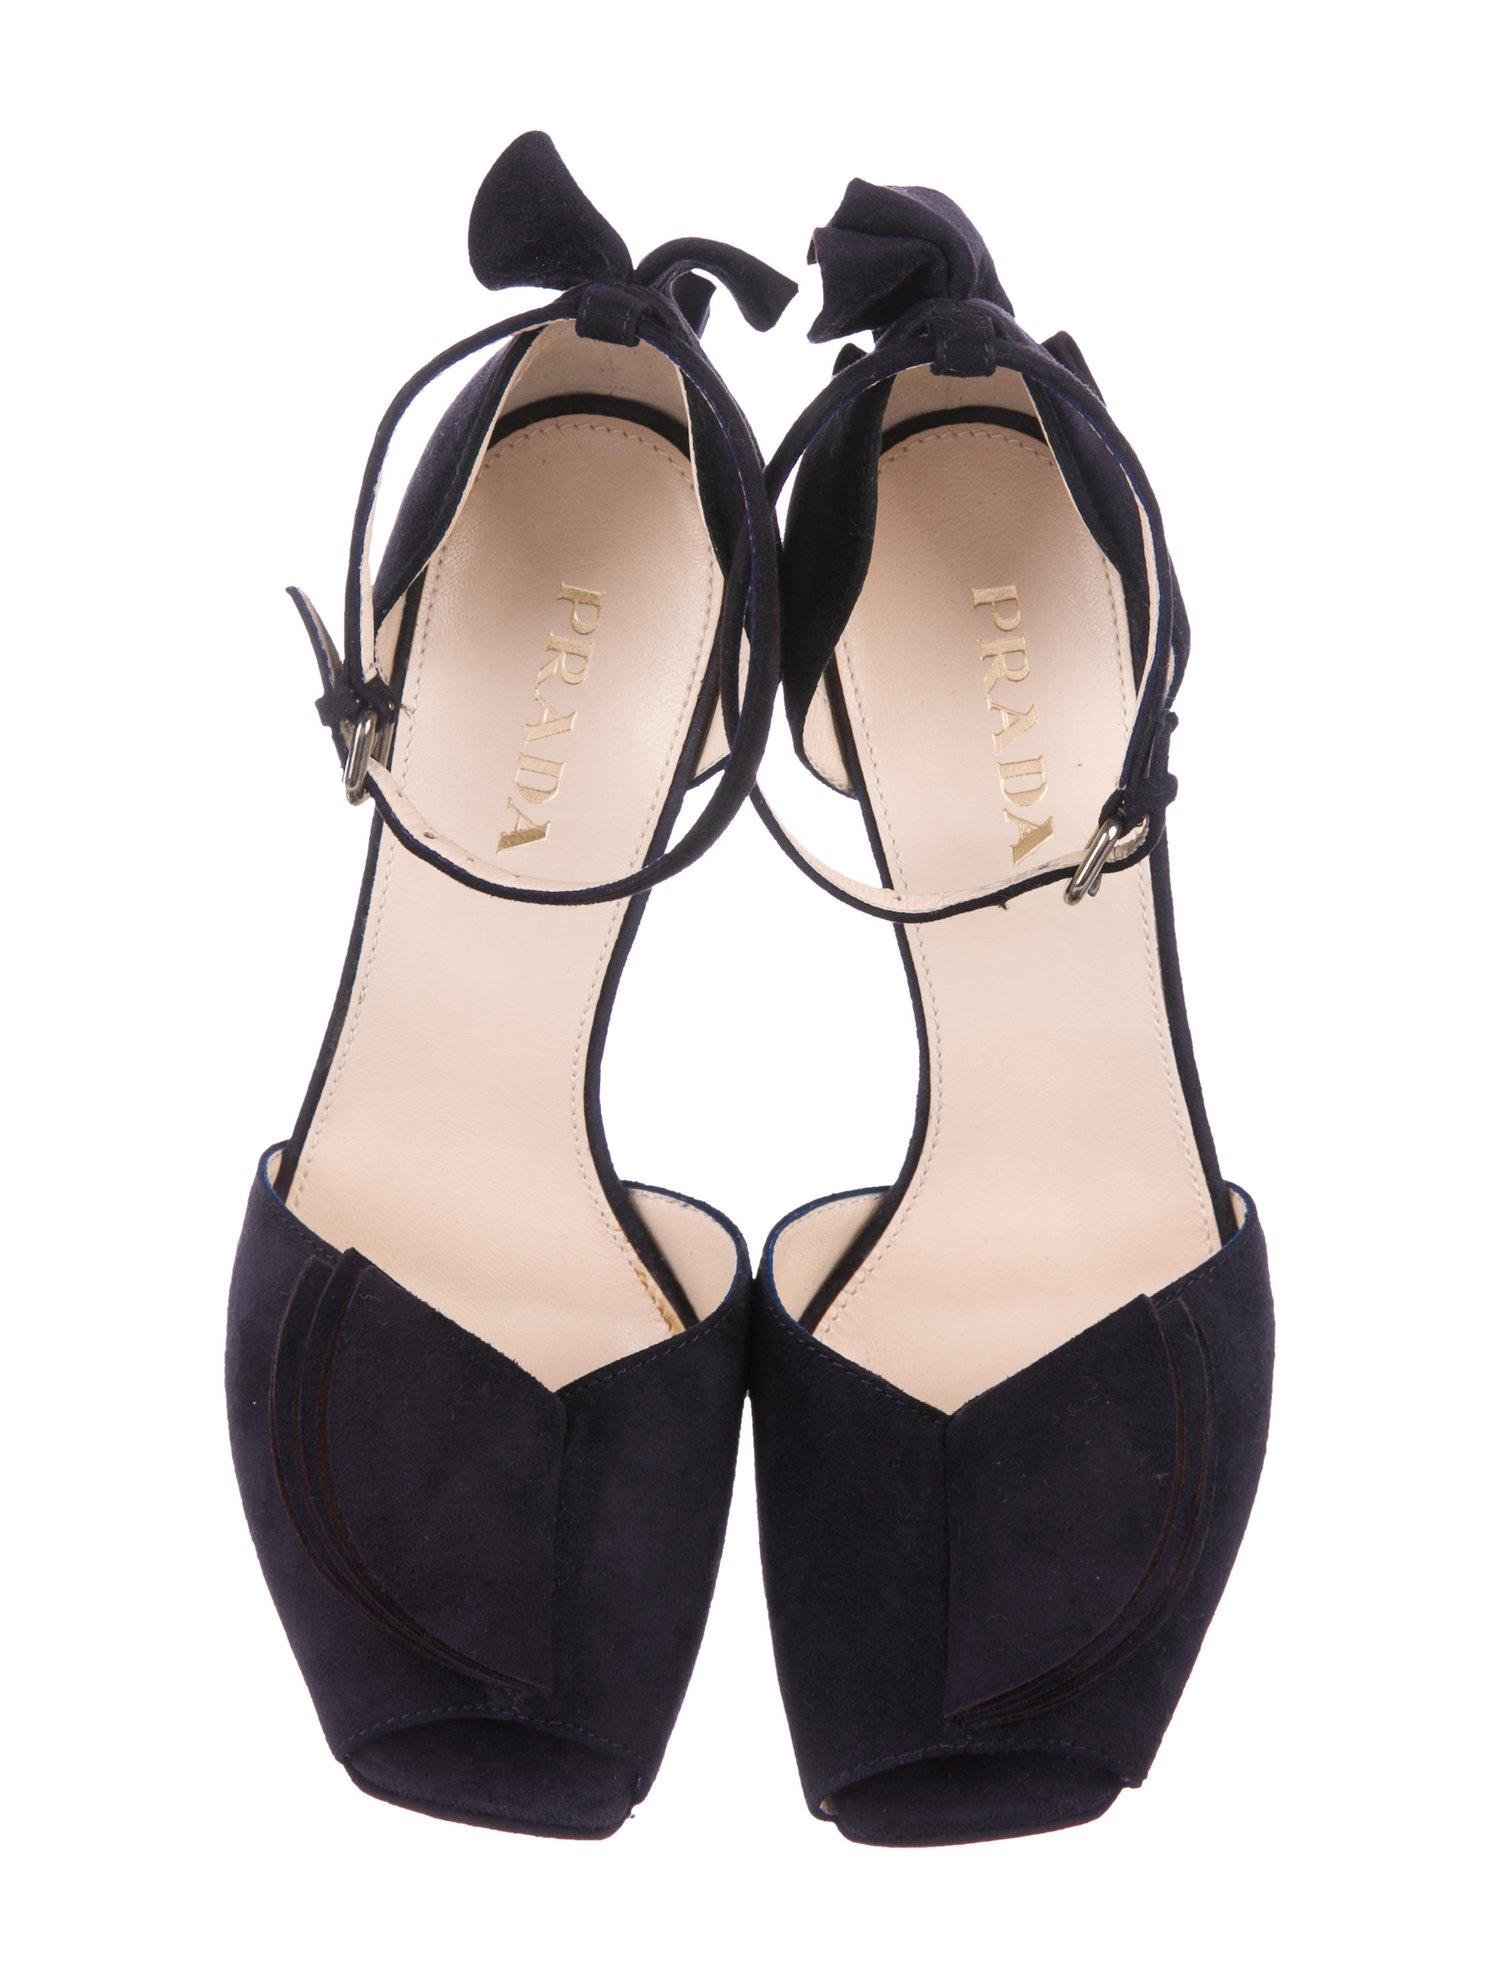 Black Prada NEW Midnight Blue Suede Ruffle Platform Evening Sandals Heels in Box